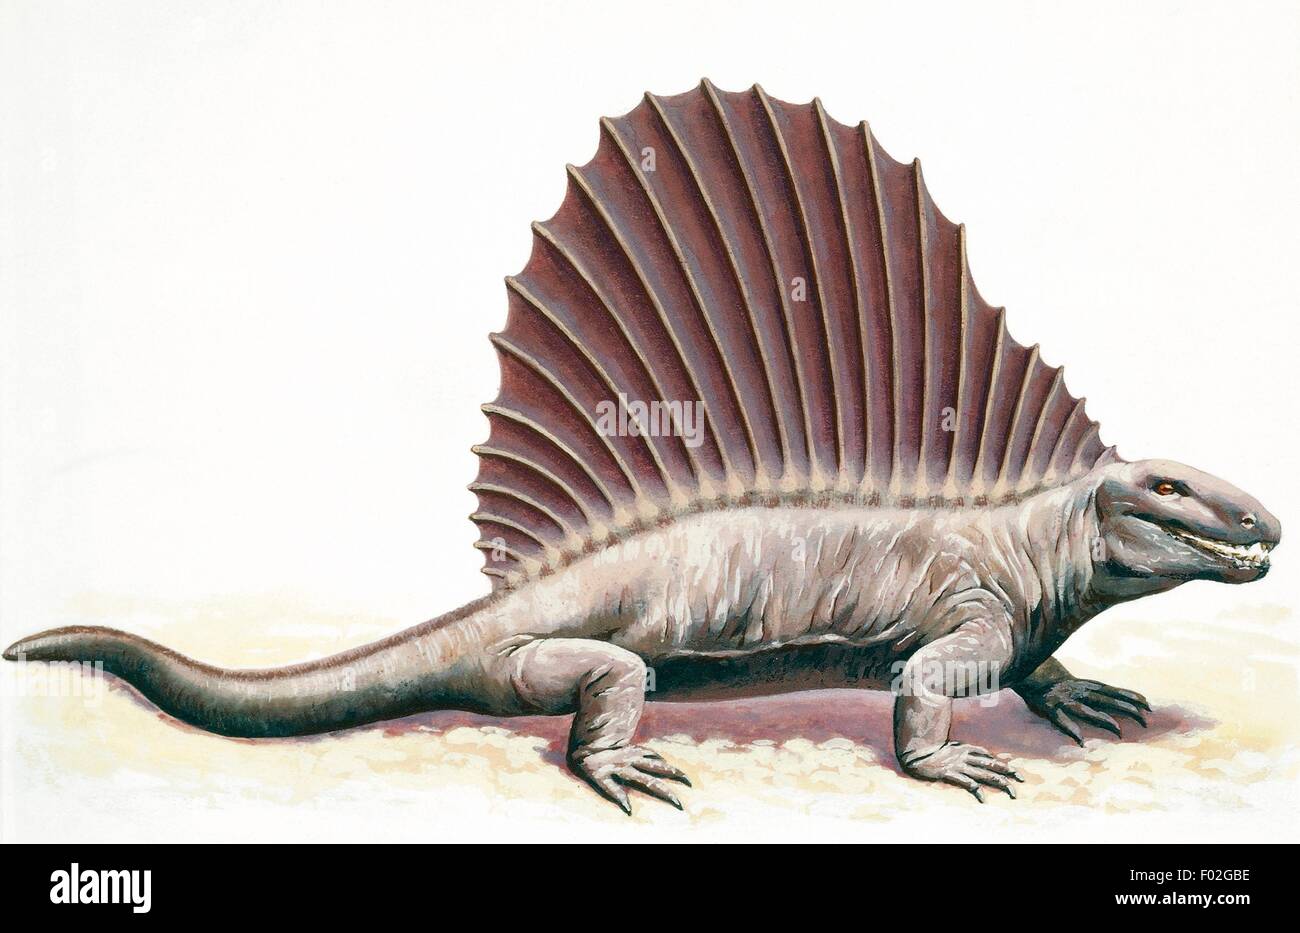 Dimetrodon, vierbeinigen Reptil der Permian Periode. Zeichnung. Stockfoto